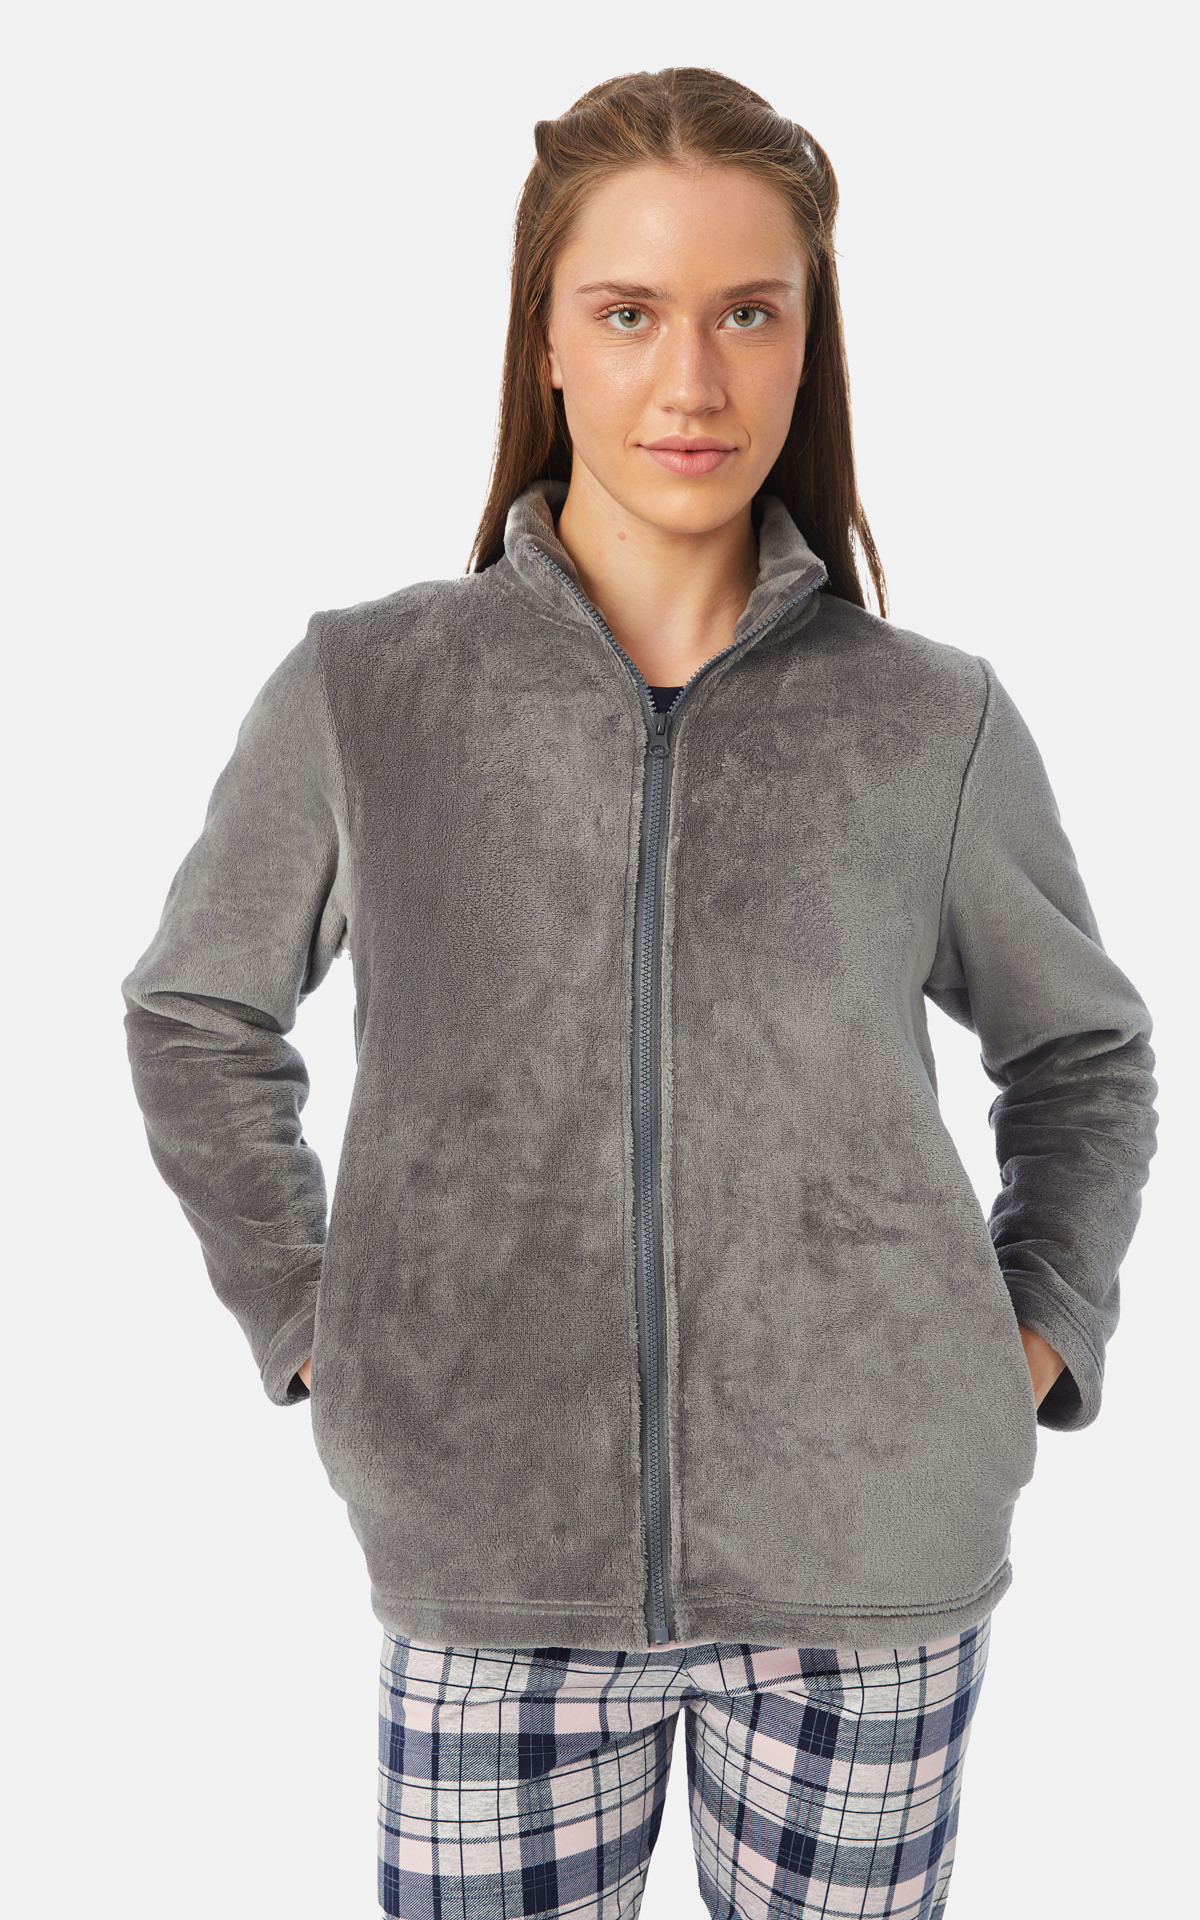 Woman Pyjama Jacket / Robe Fleece Women's Jacket